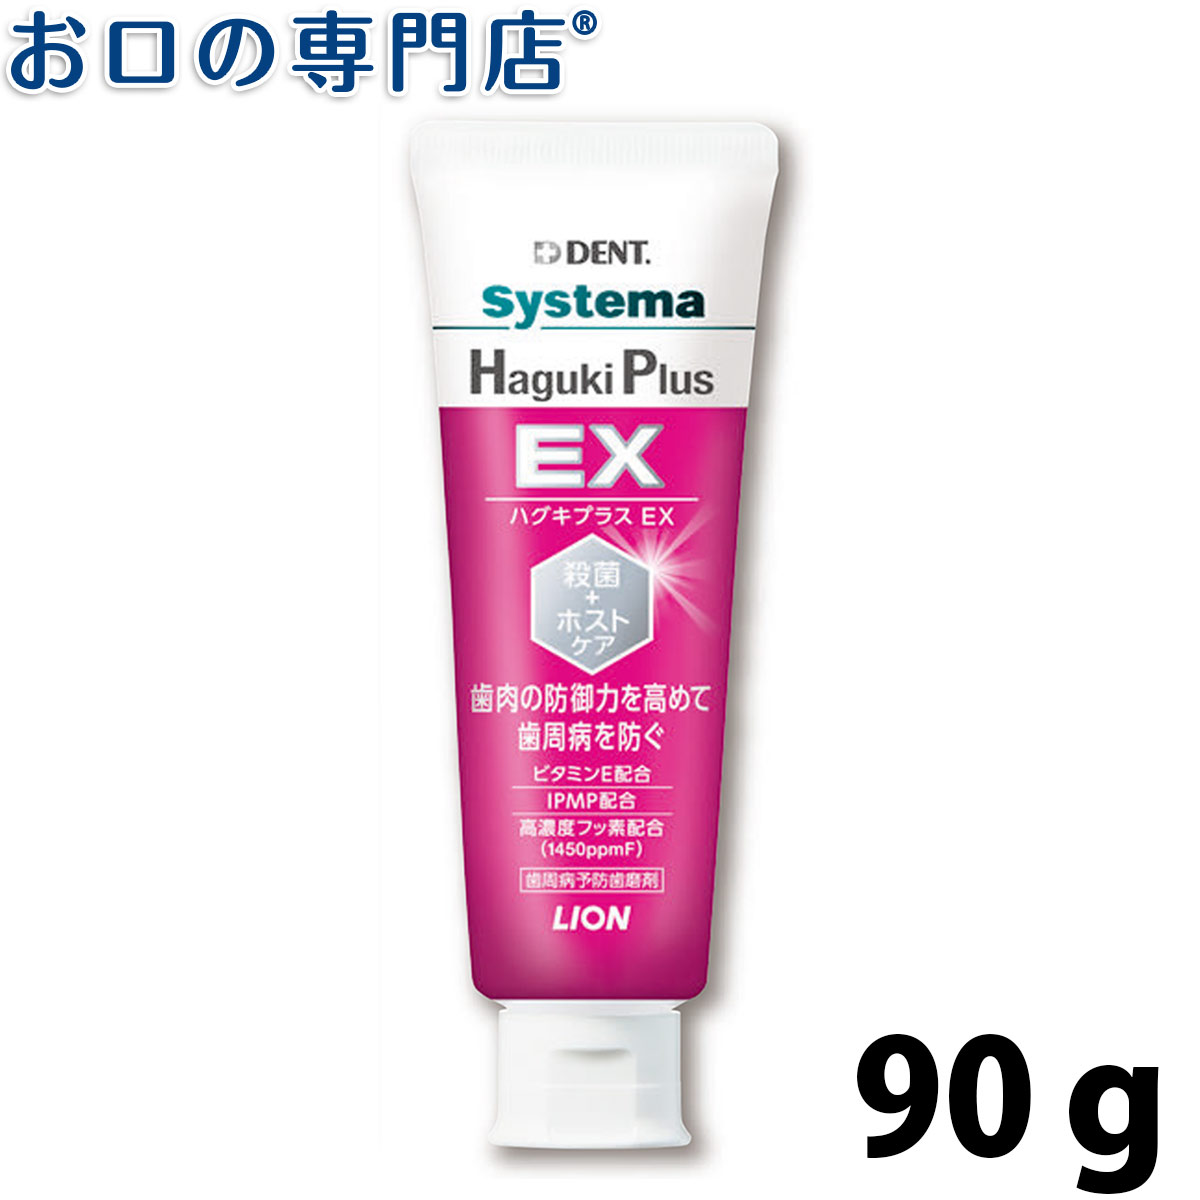 ライオン デント システマ ハグキプラスEX(Haguki Plus EX) 90g × 1本 歯科専売品